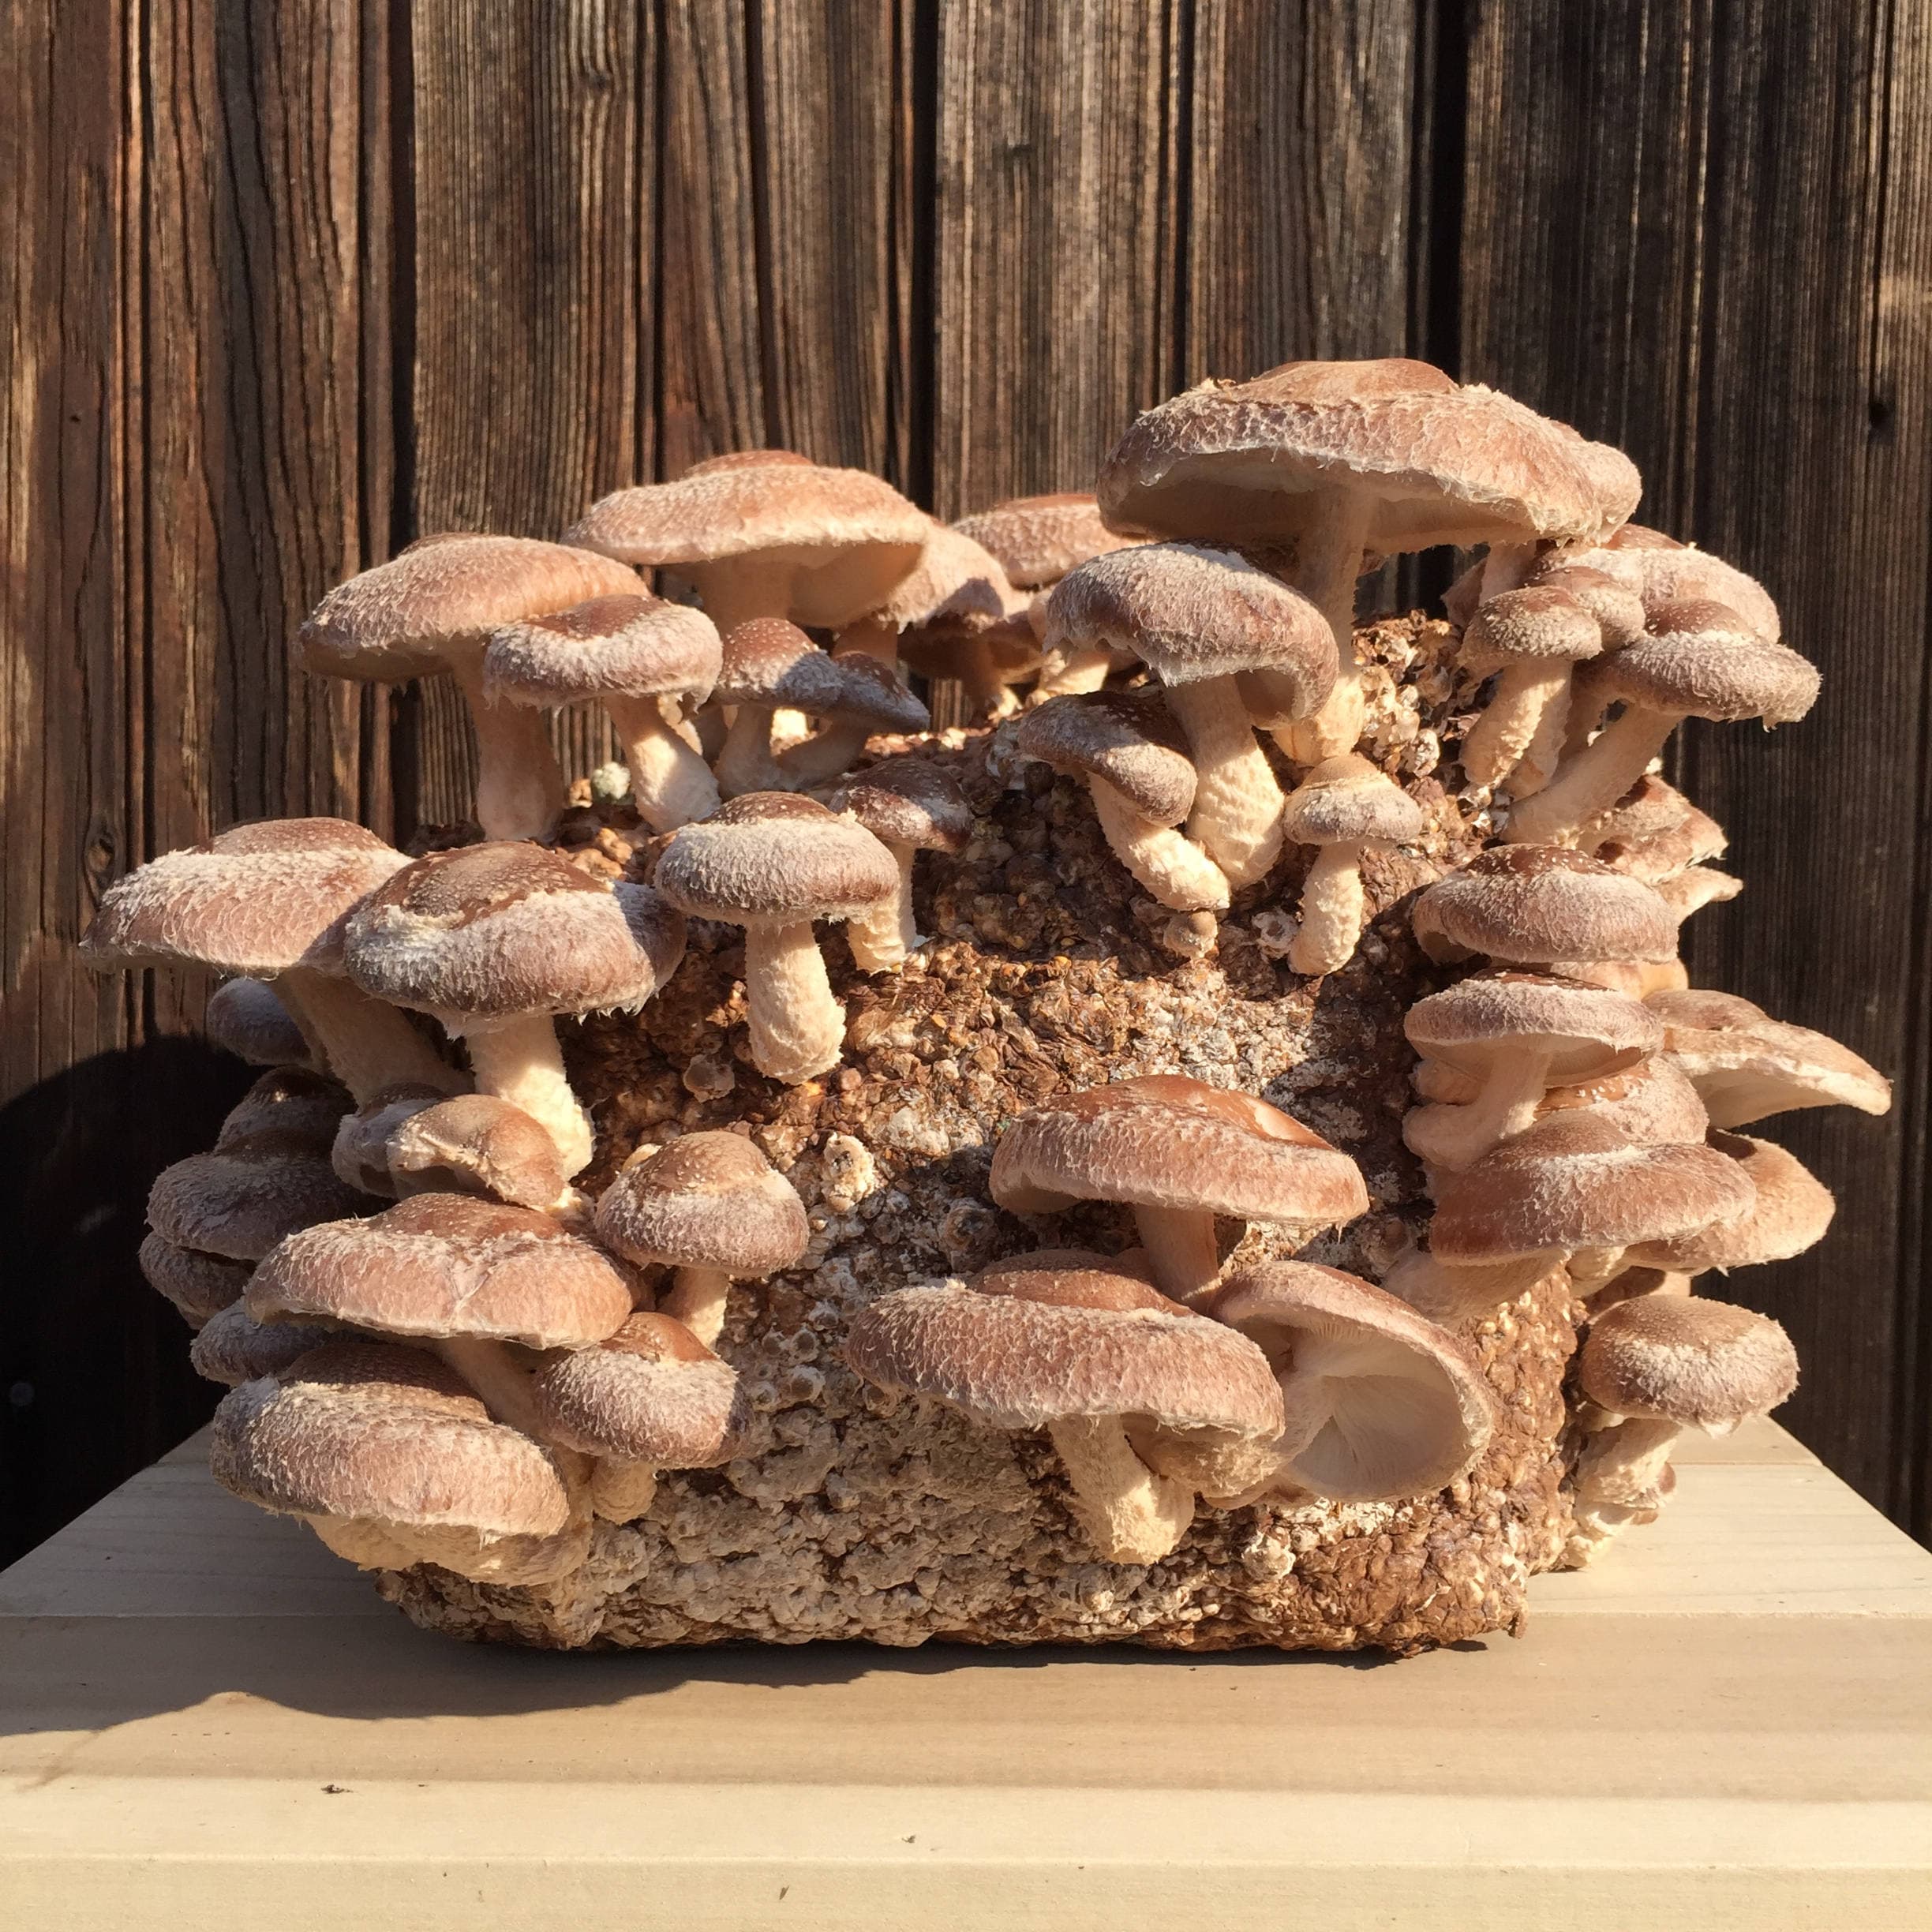 Mushroom grow Kit